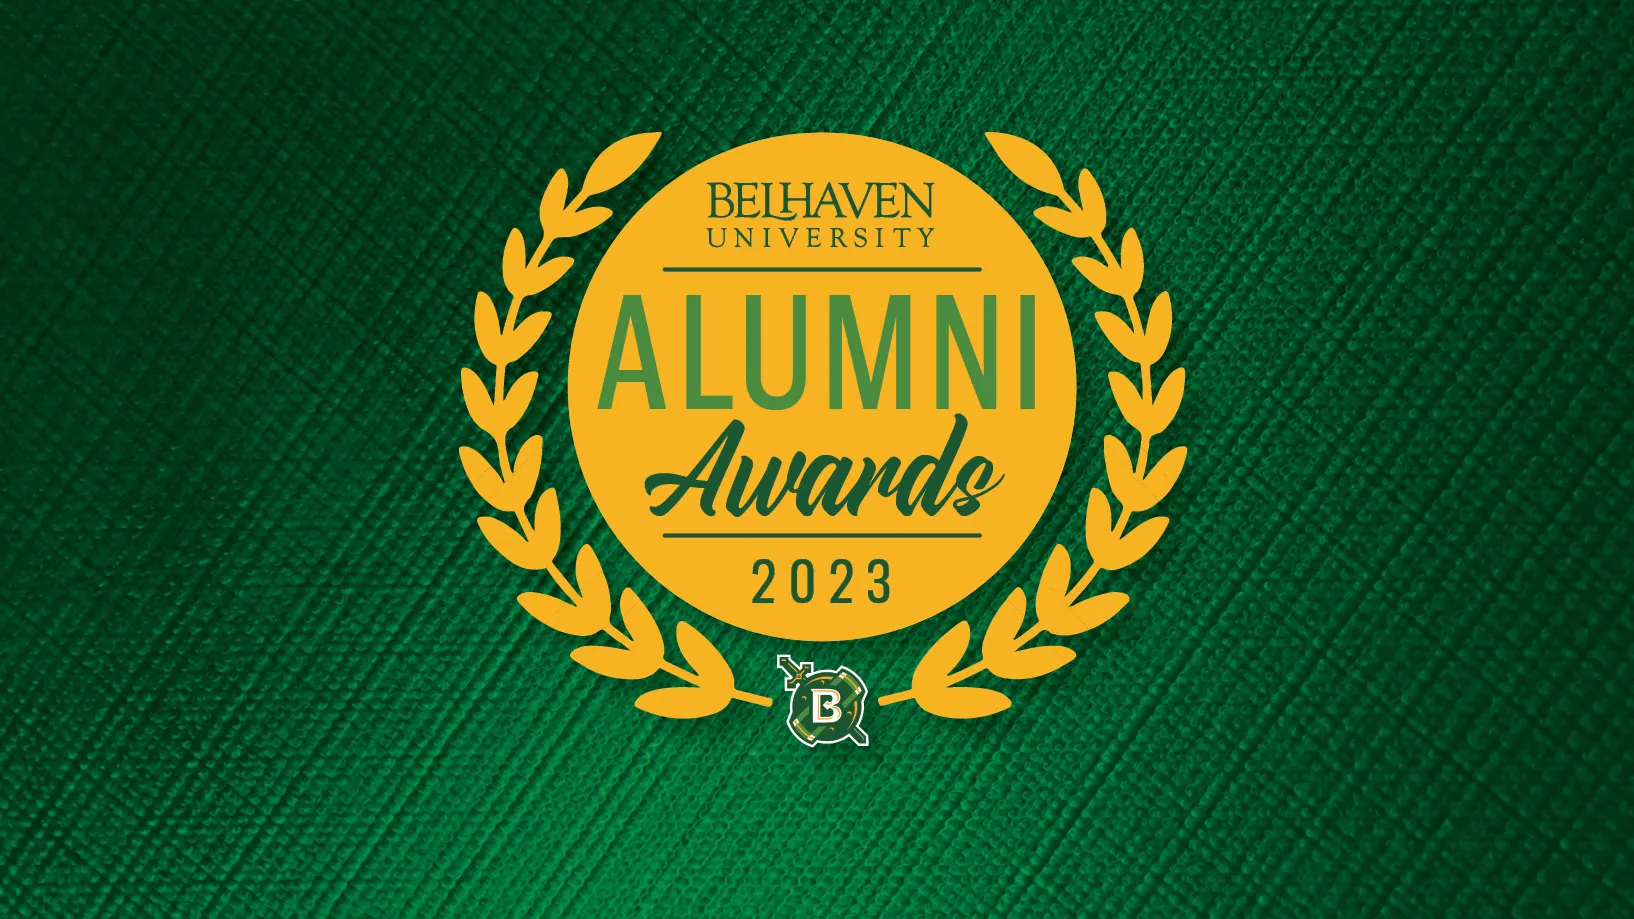 2023 Alumni Awards